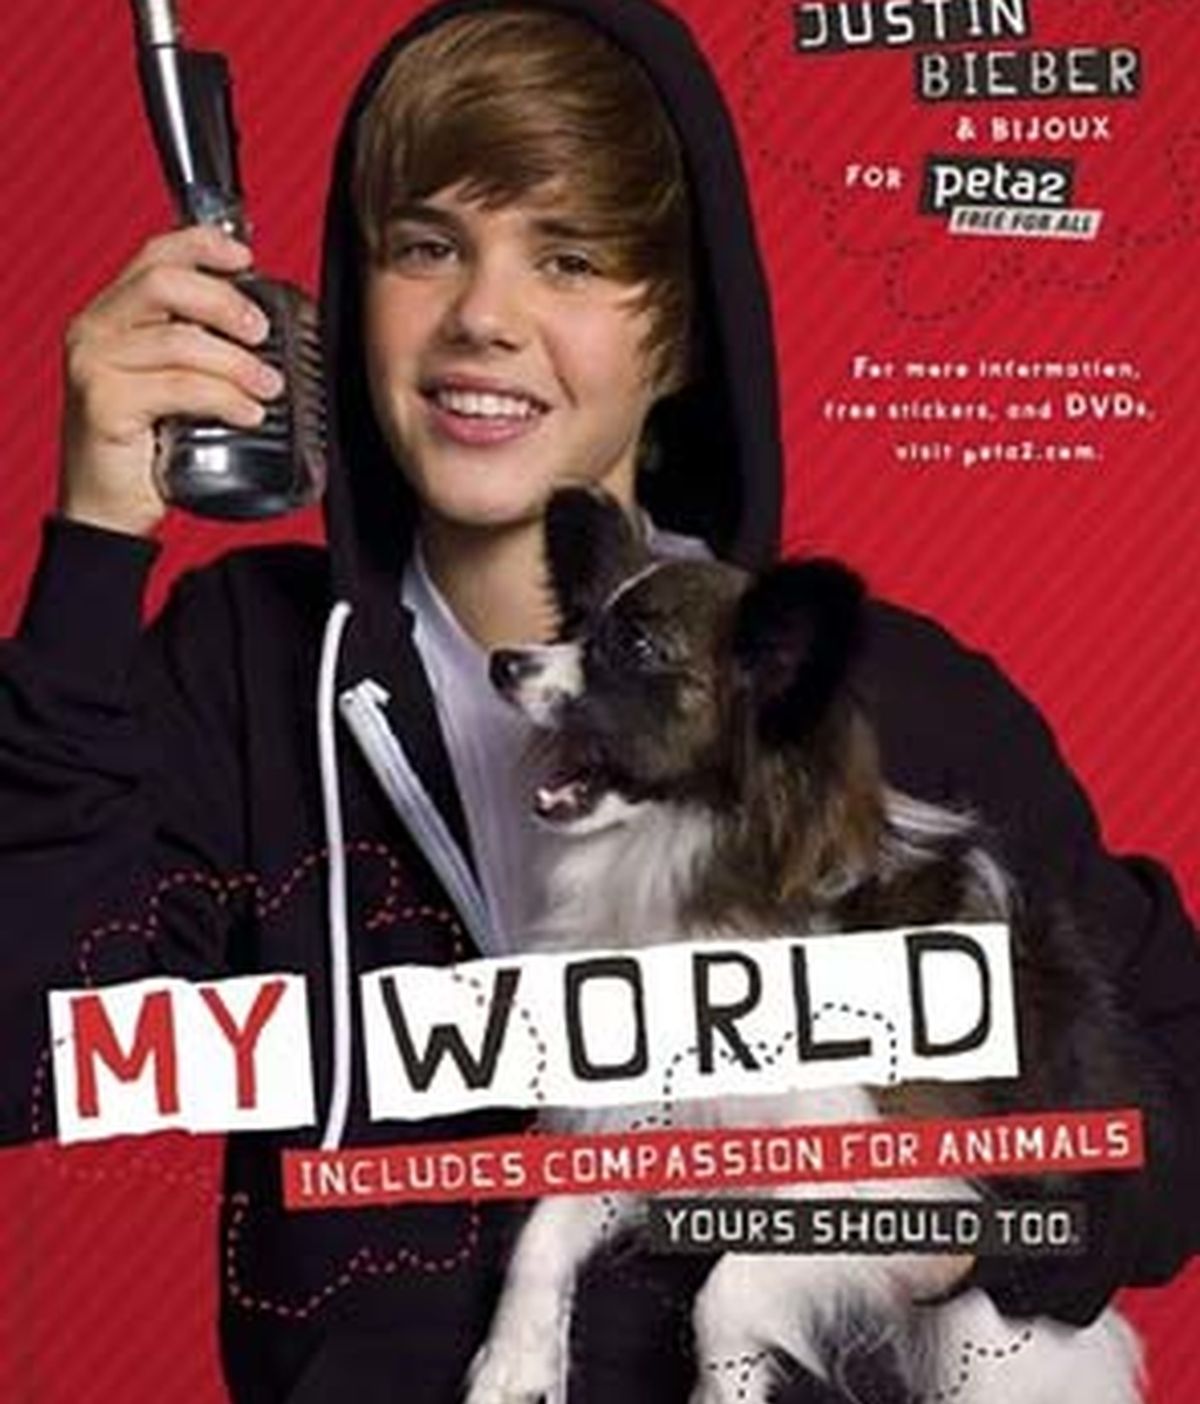 Justin Bieber , un buen ejemplo demostrando su caríño hacia los animales. FOTO:PETA